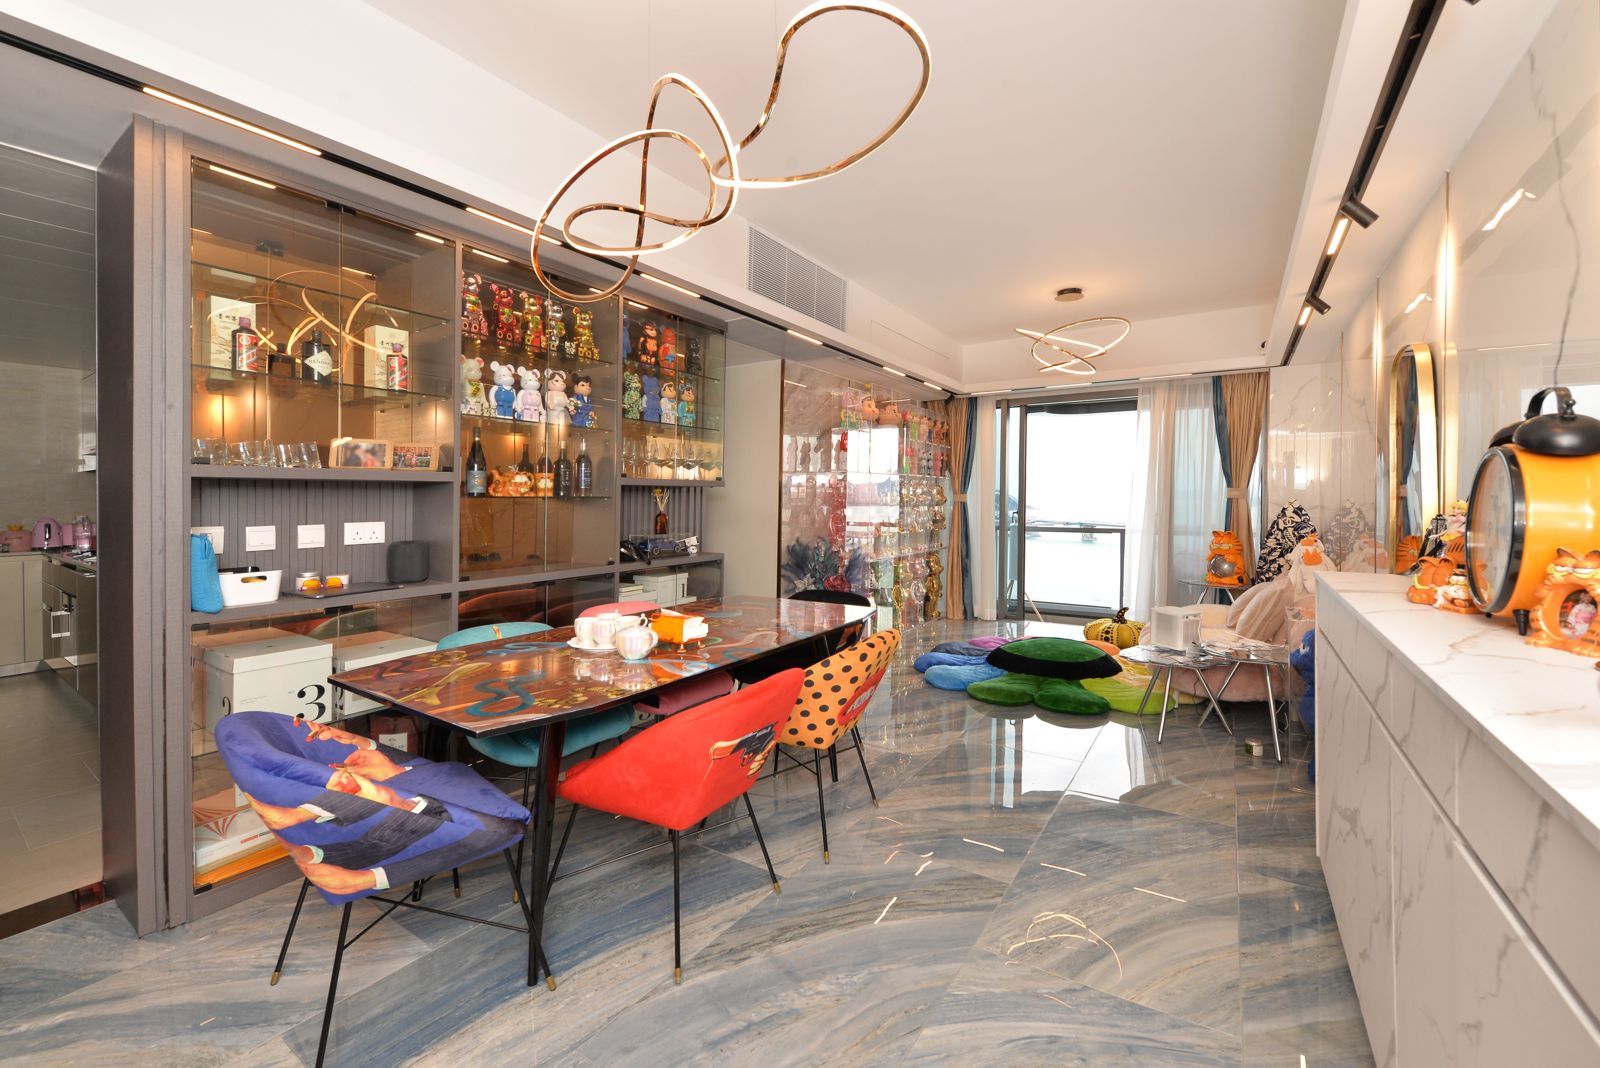 將軍澳-藍塘傲:  家居設計巧妙呈現收藏品與時尚融合